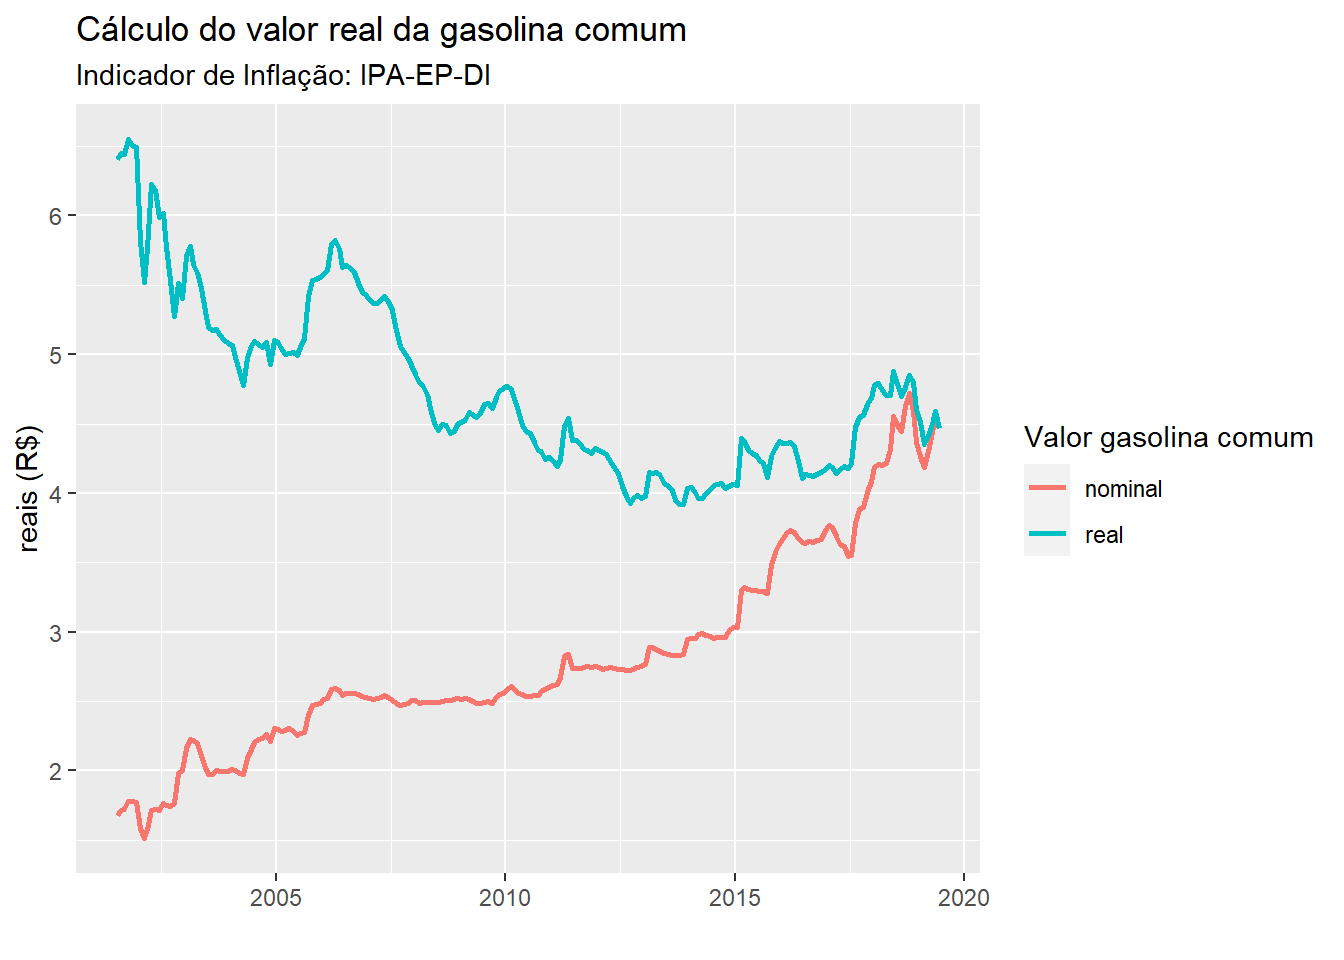 Comparação do preço nominal e real da gasolina comum entre Jun/2001 e Jun/2019